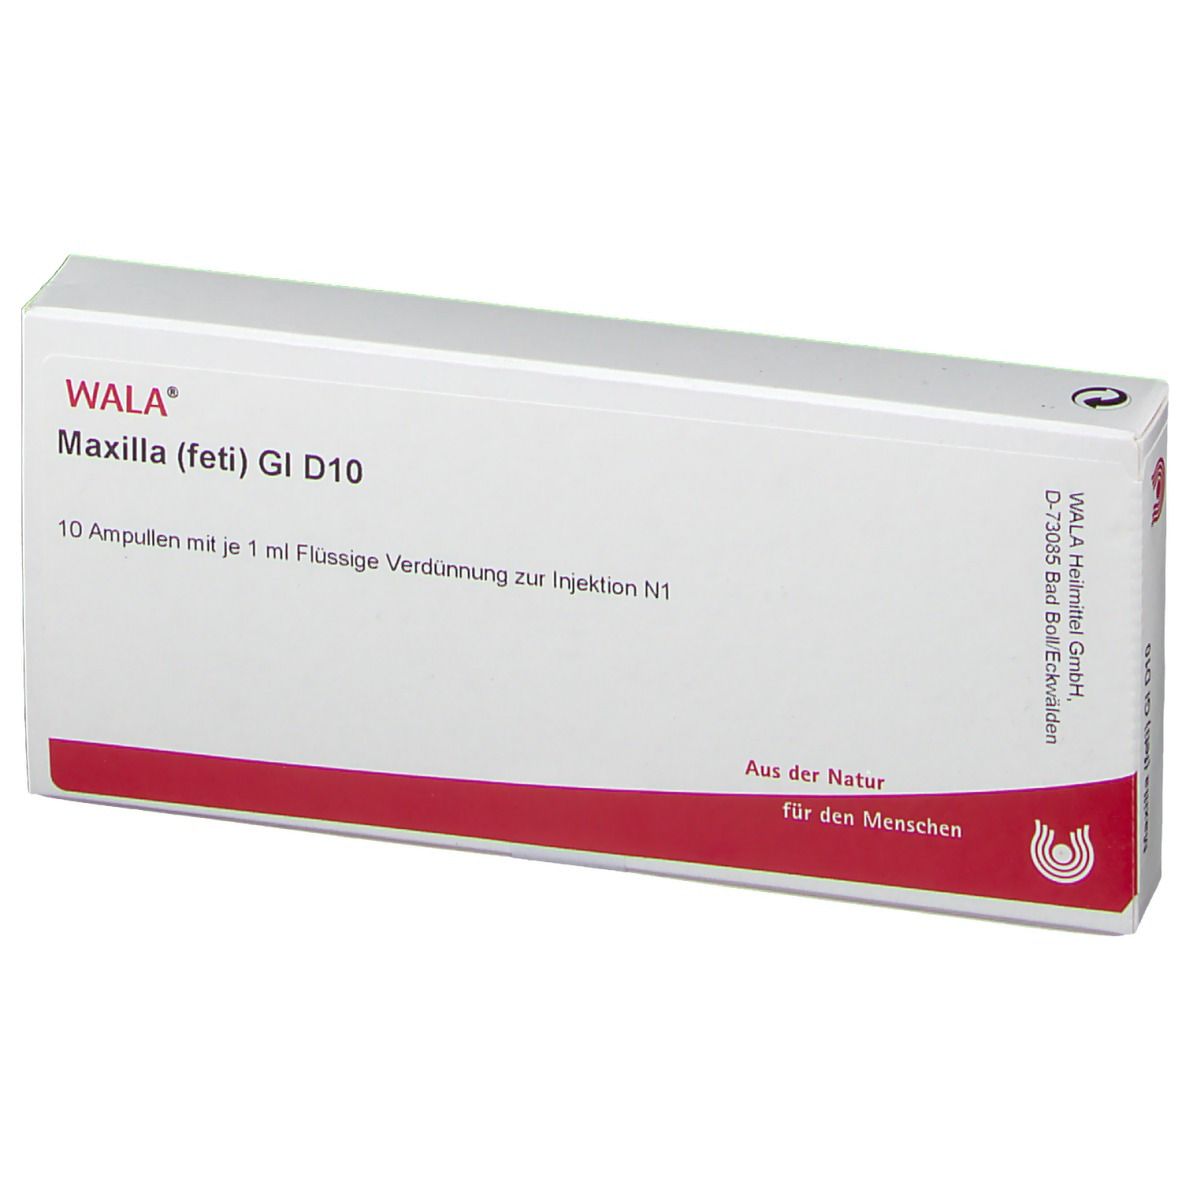 WALA® Maxilla feti Gl D 10